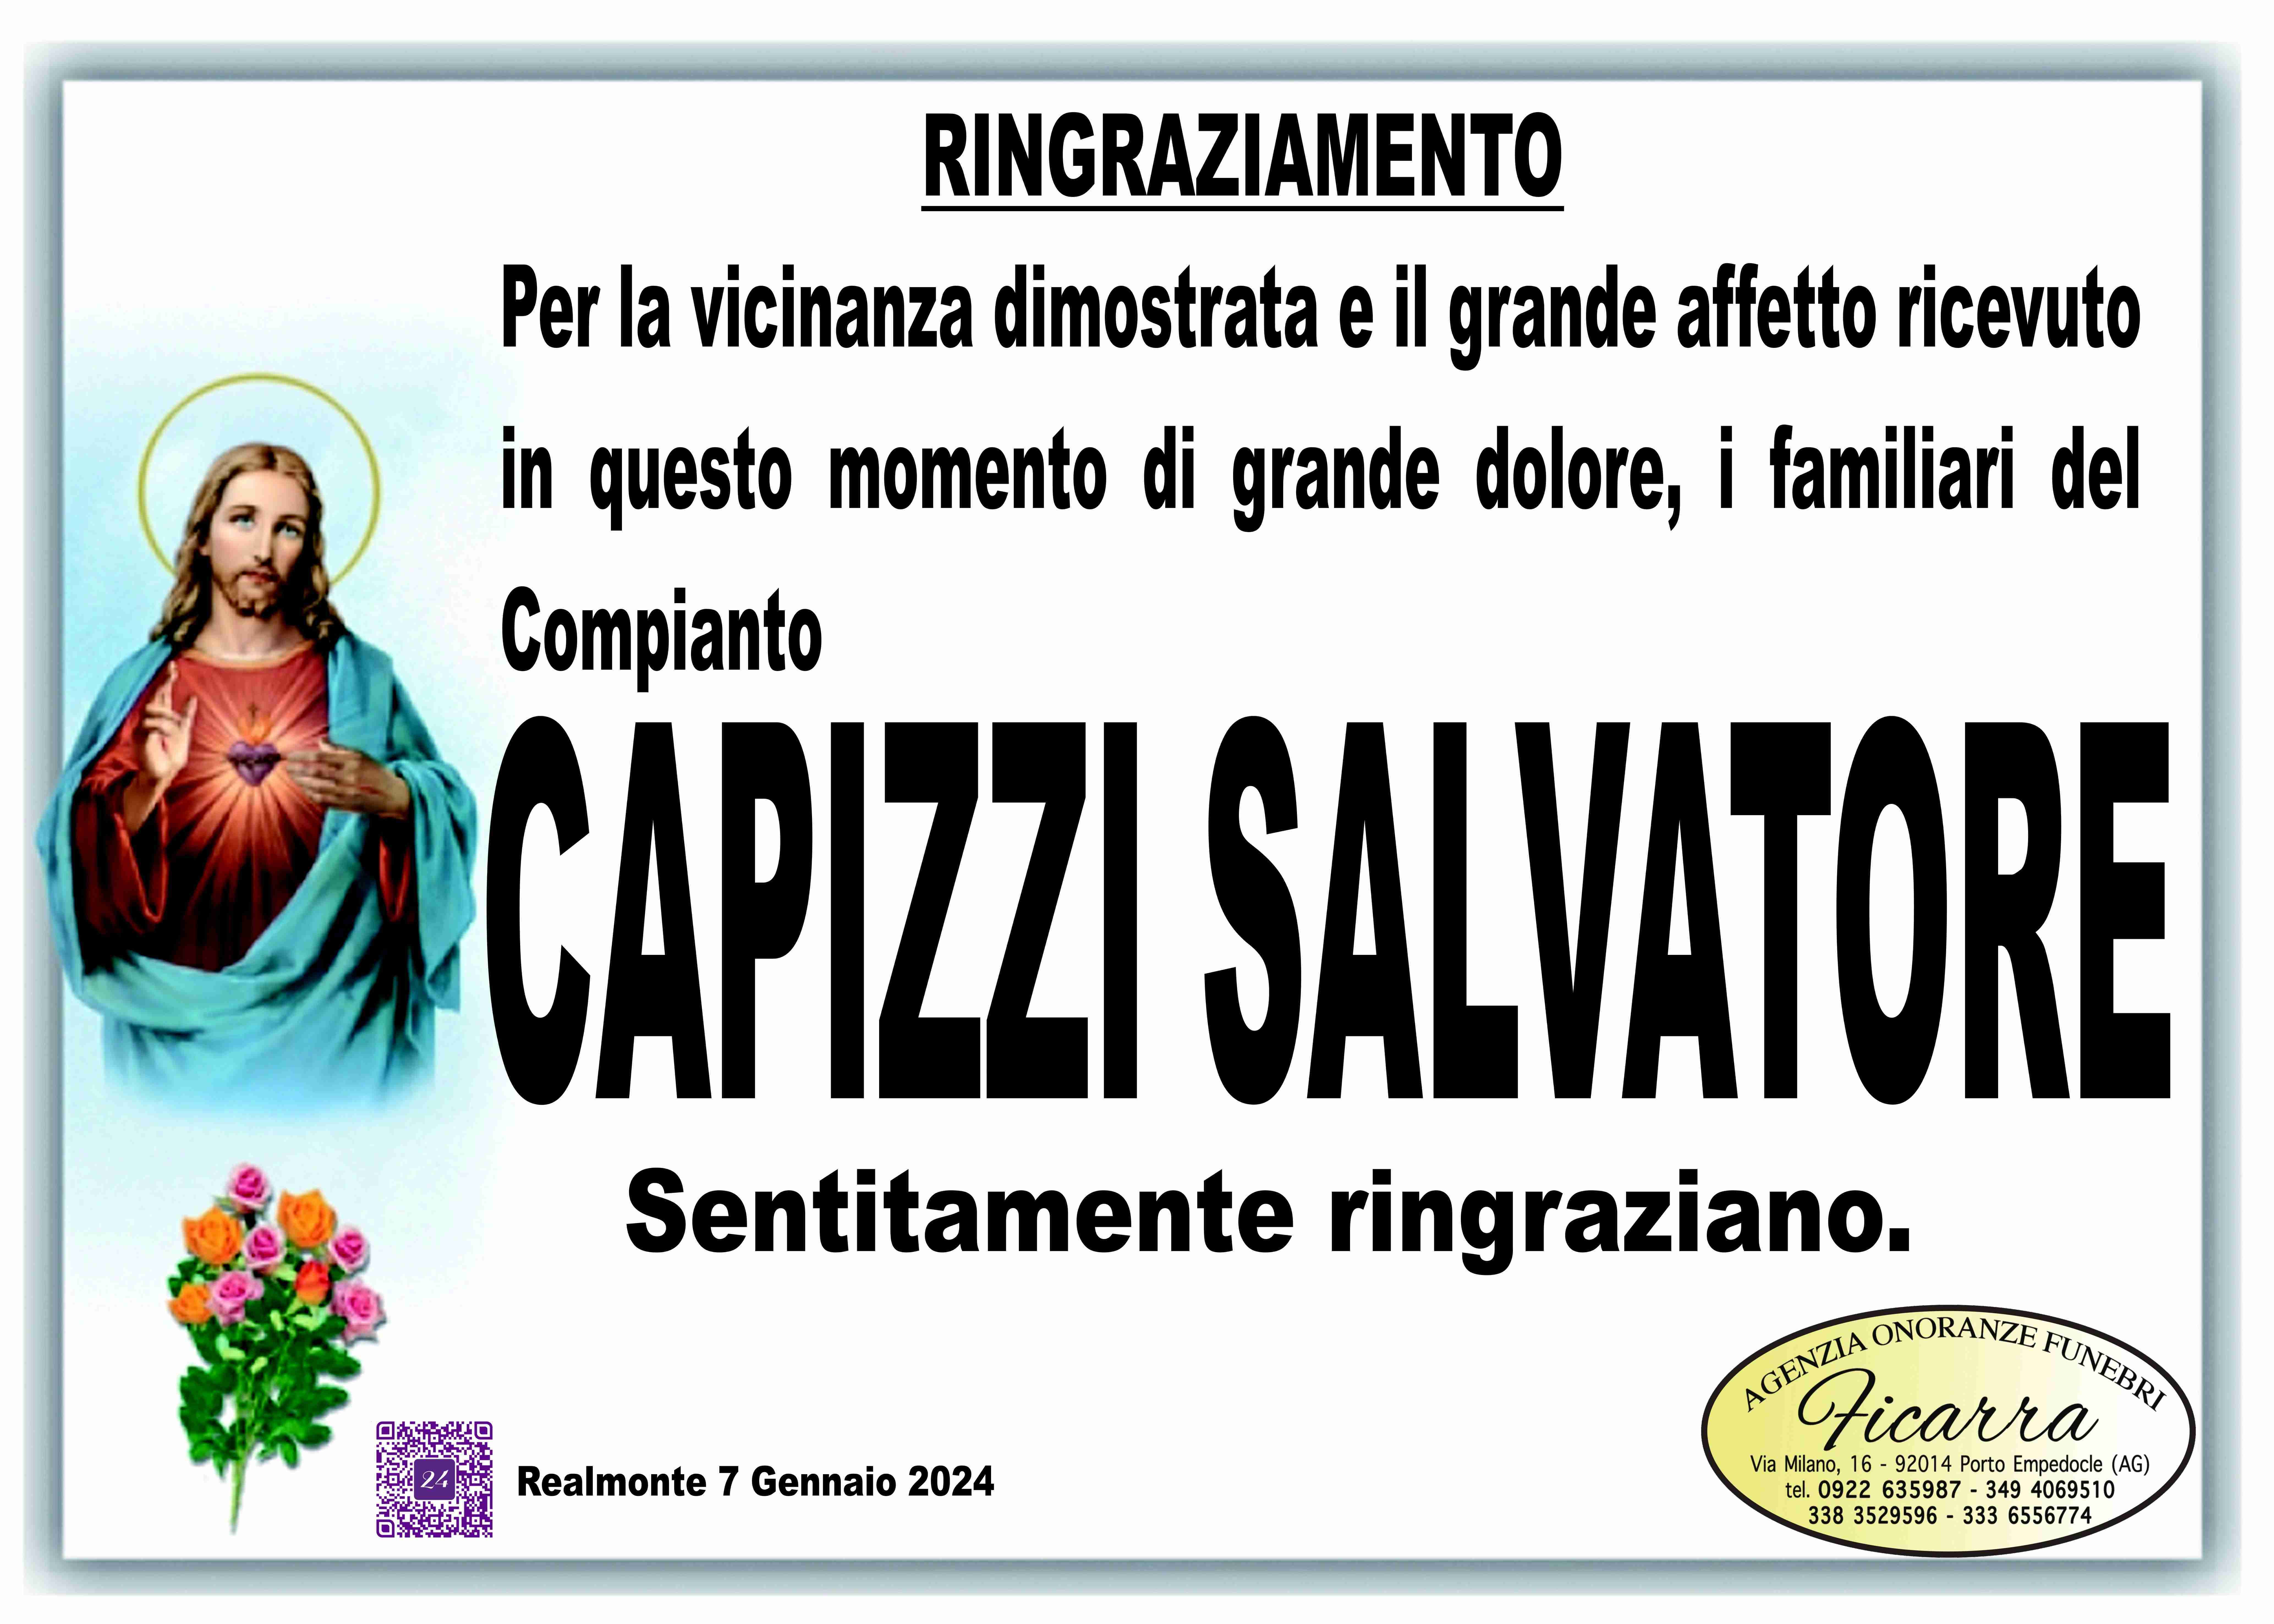 Salvatore Capizzi